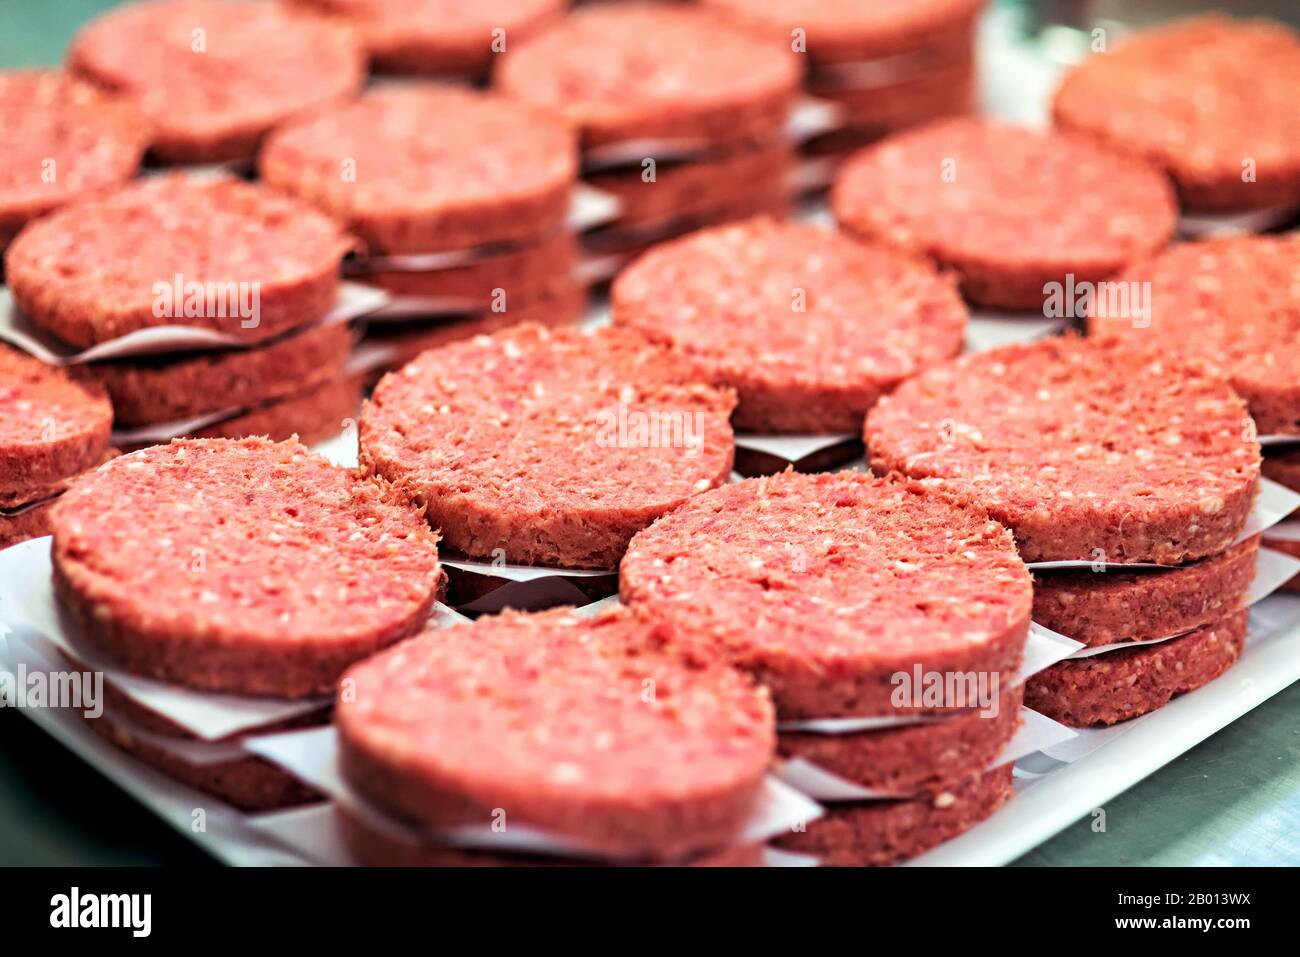 Frische Hamburger rote Fleischscheibe stapelt sich in Nahaufnahme. Fast Food-Zutaten zum Kochen bereit Stockfoto